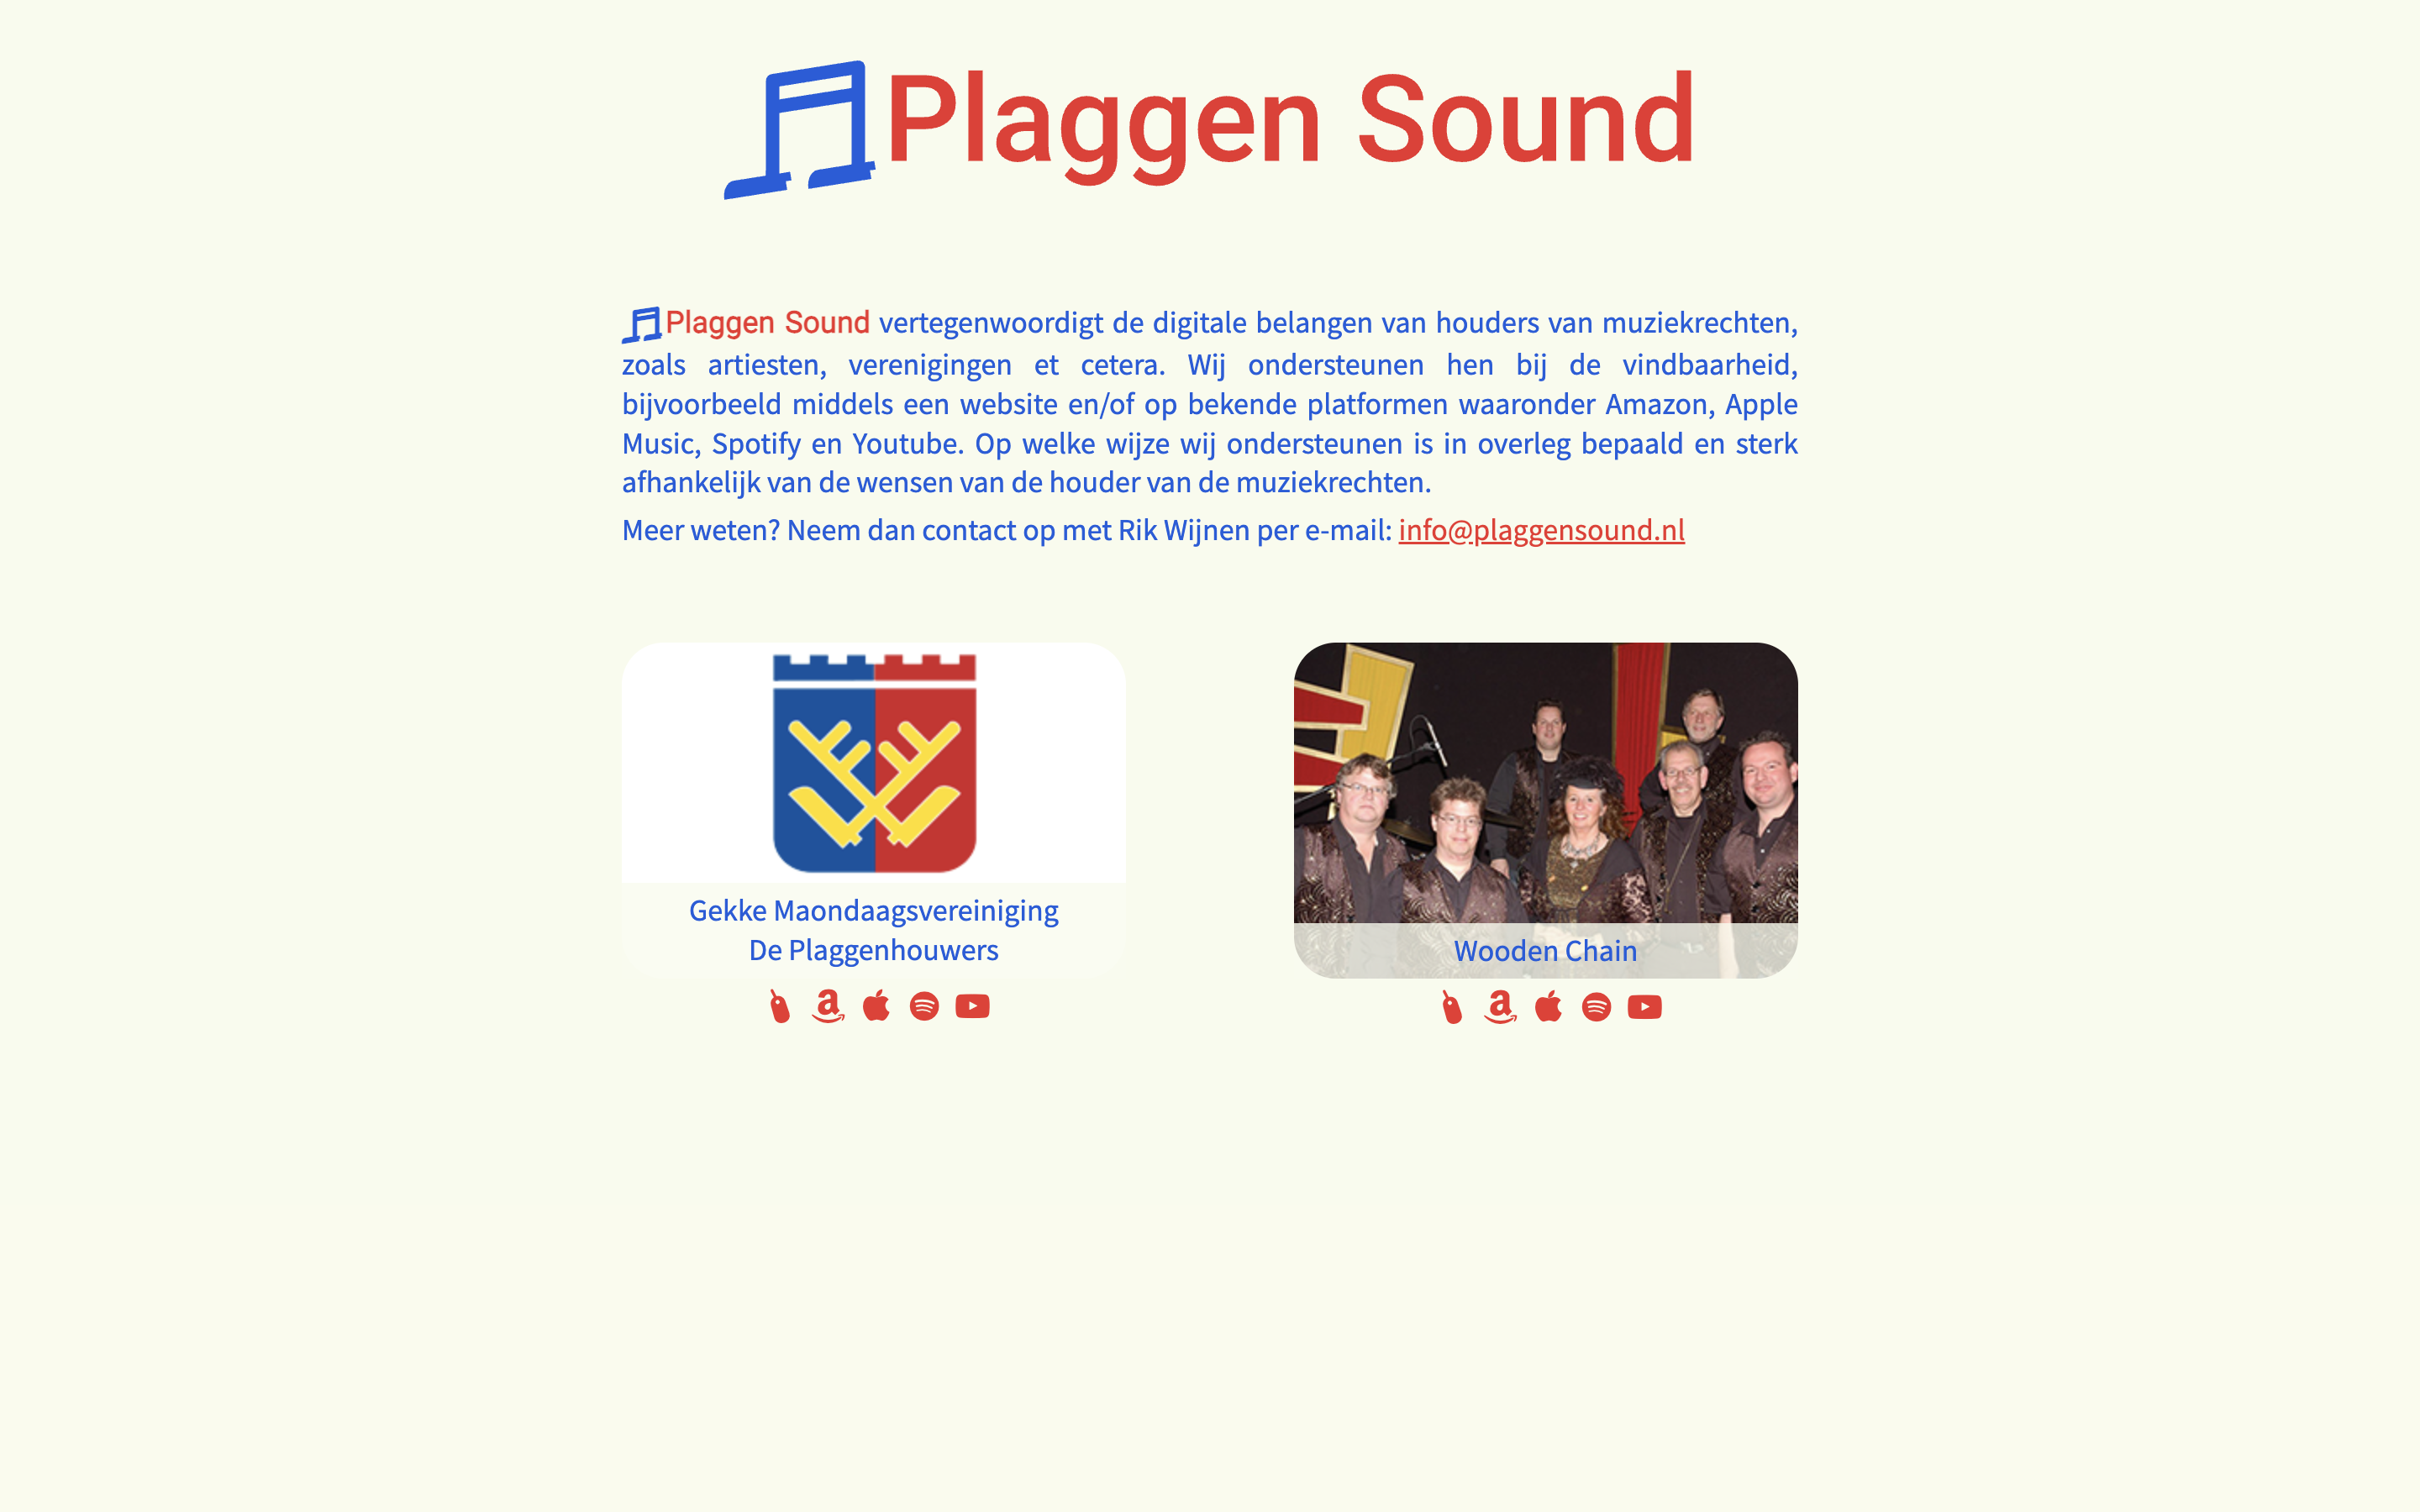 Plaggen Sound